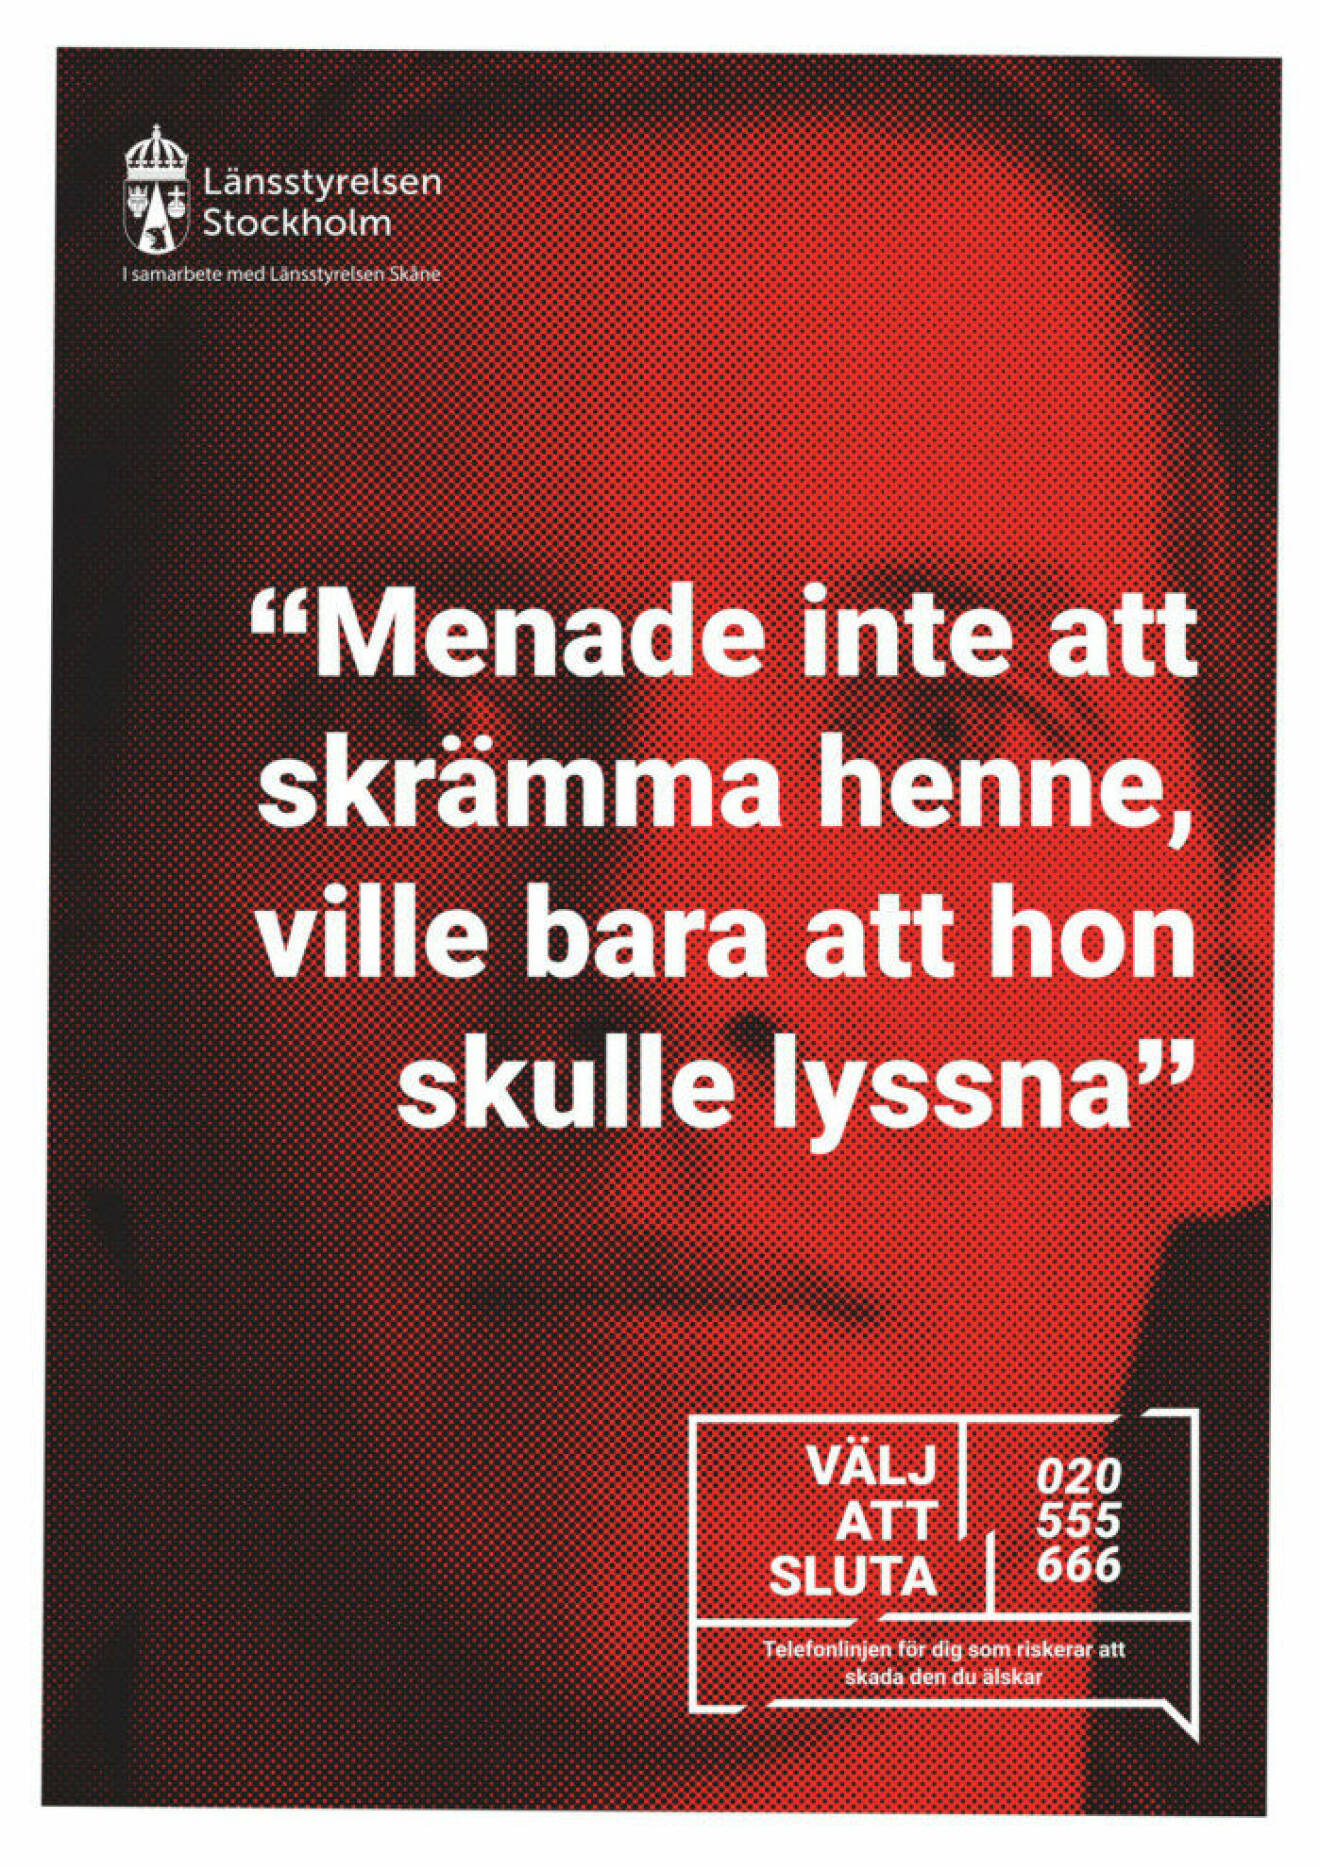 Annons från Länsstyrelsen som kommer visas i kollektivtrafik och på utomhustavlor. 